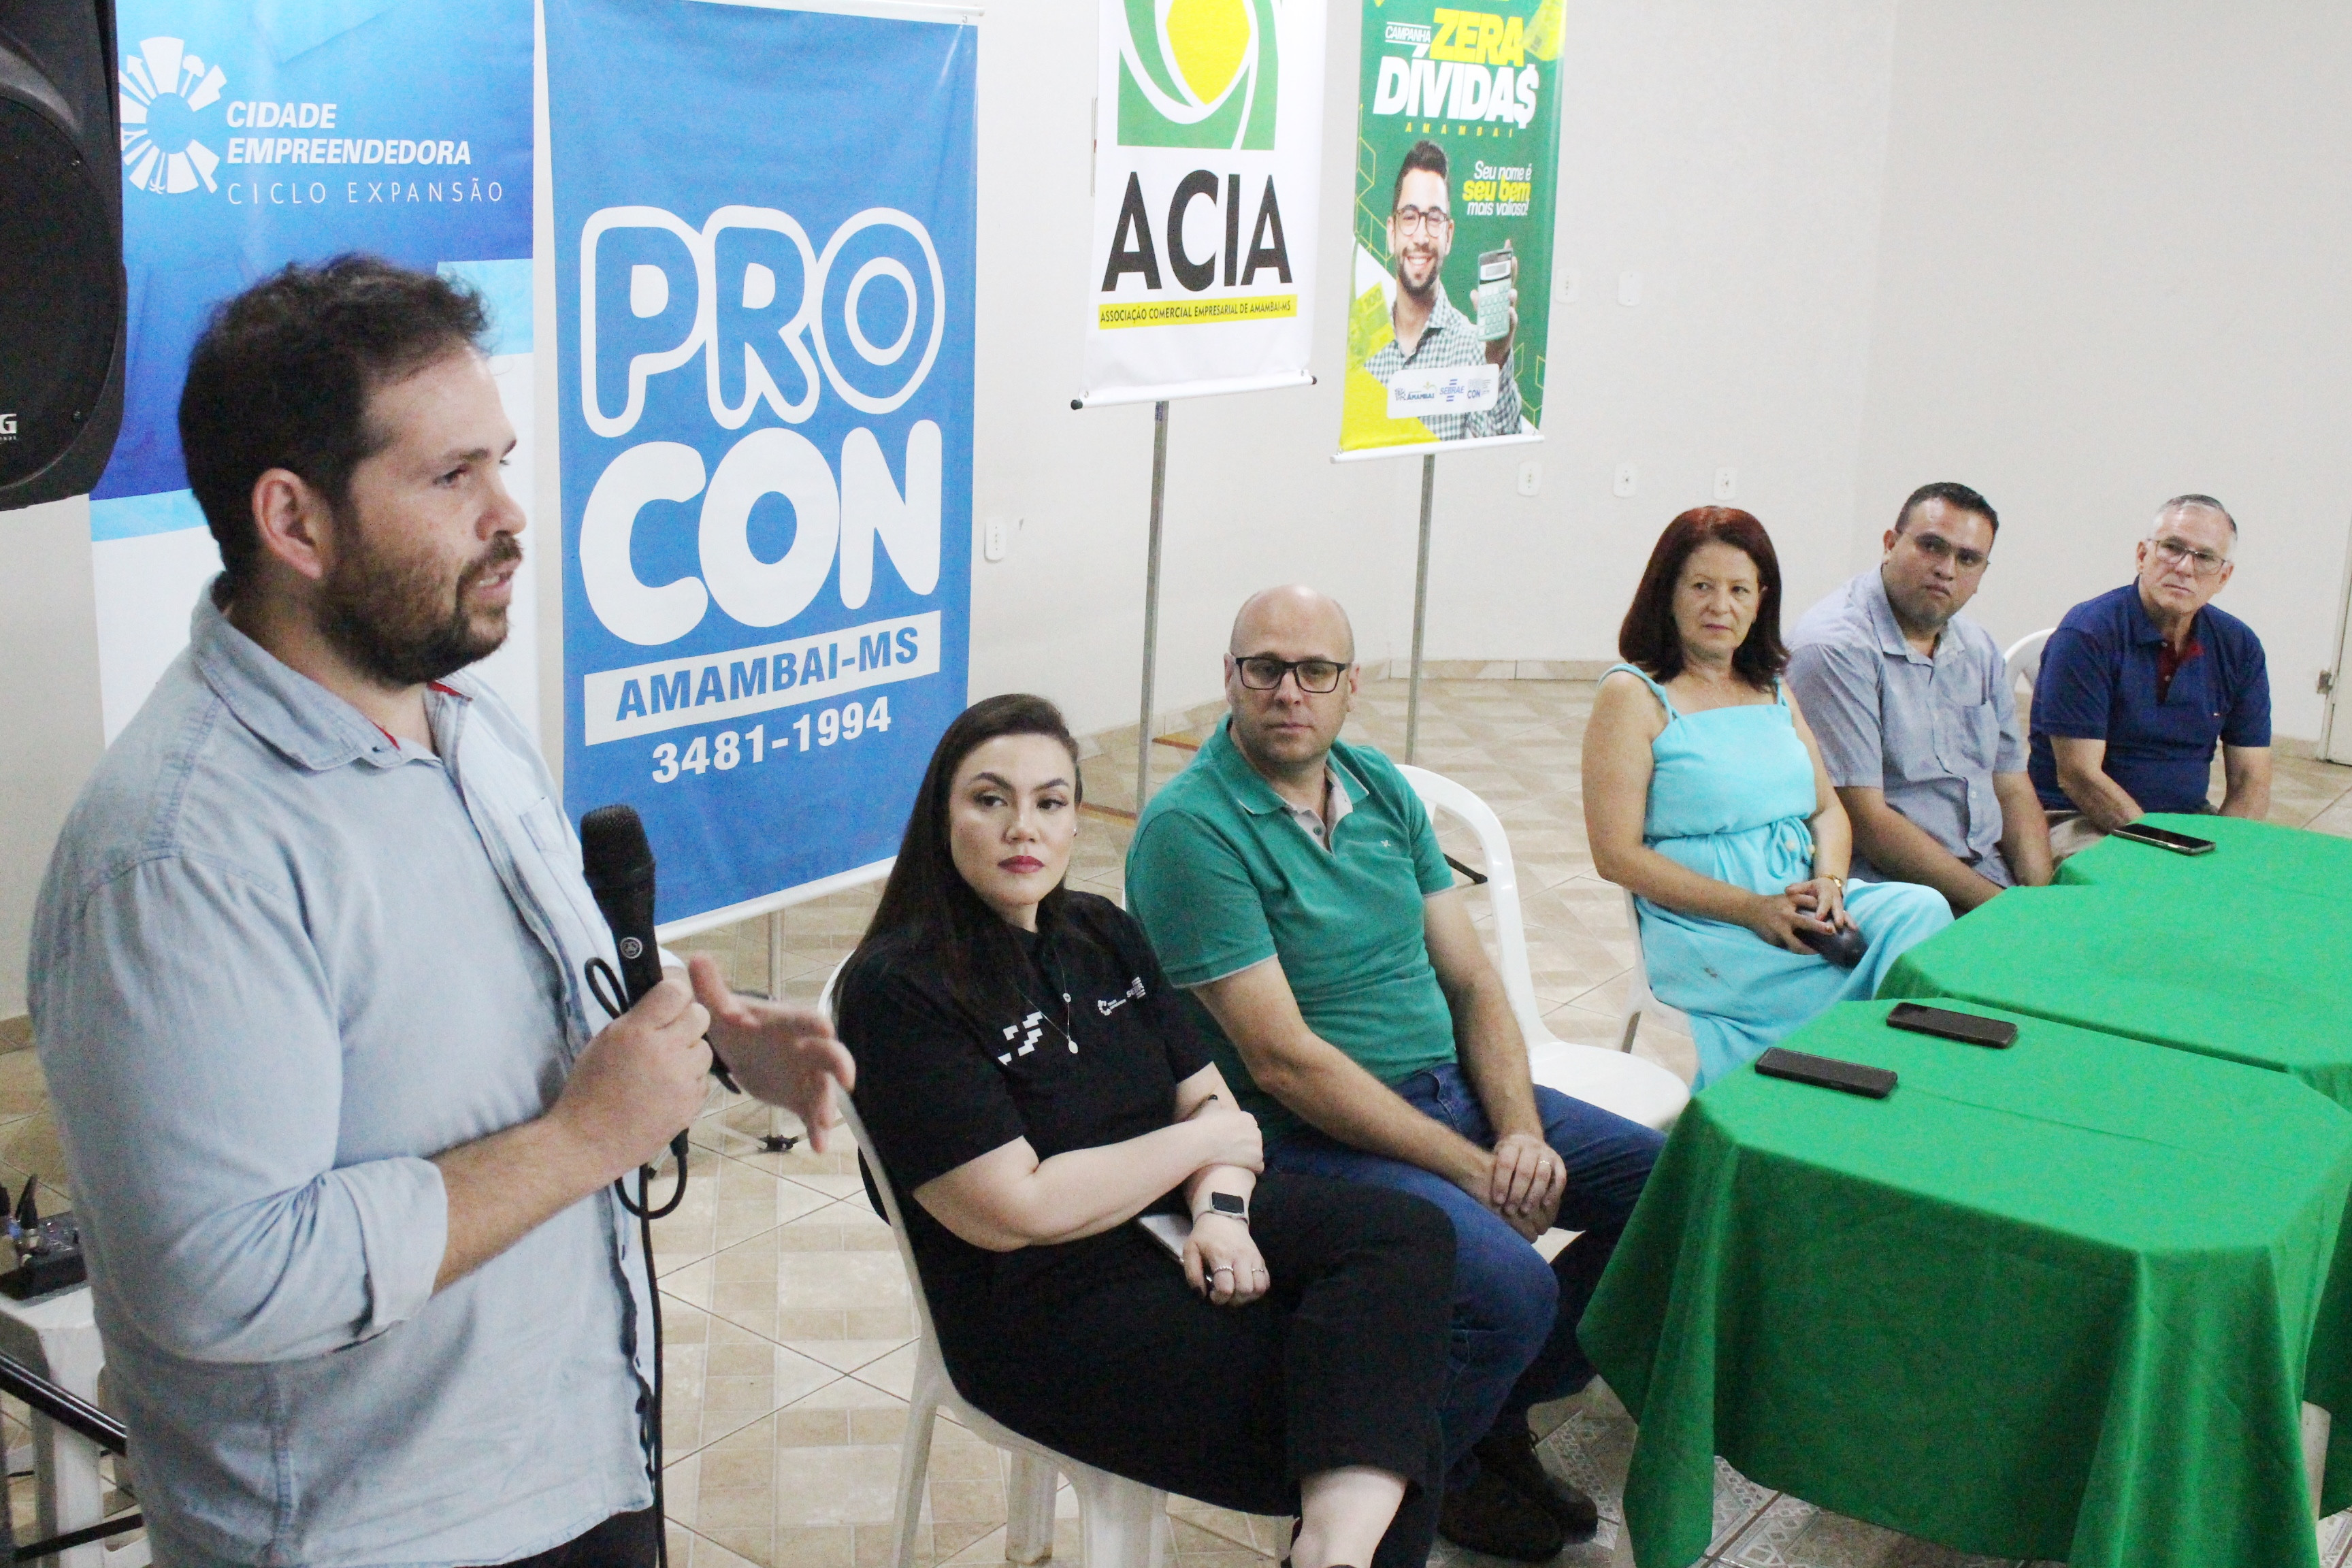 ACIA, Procon, Sebrae e prefeitura lançam campanha “Zera Dívidas” em Amambai